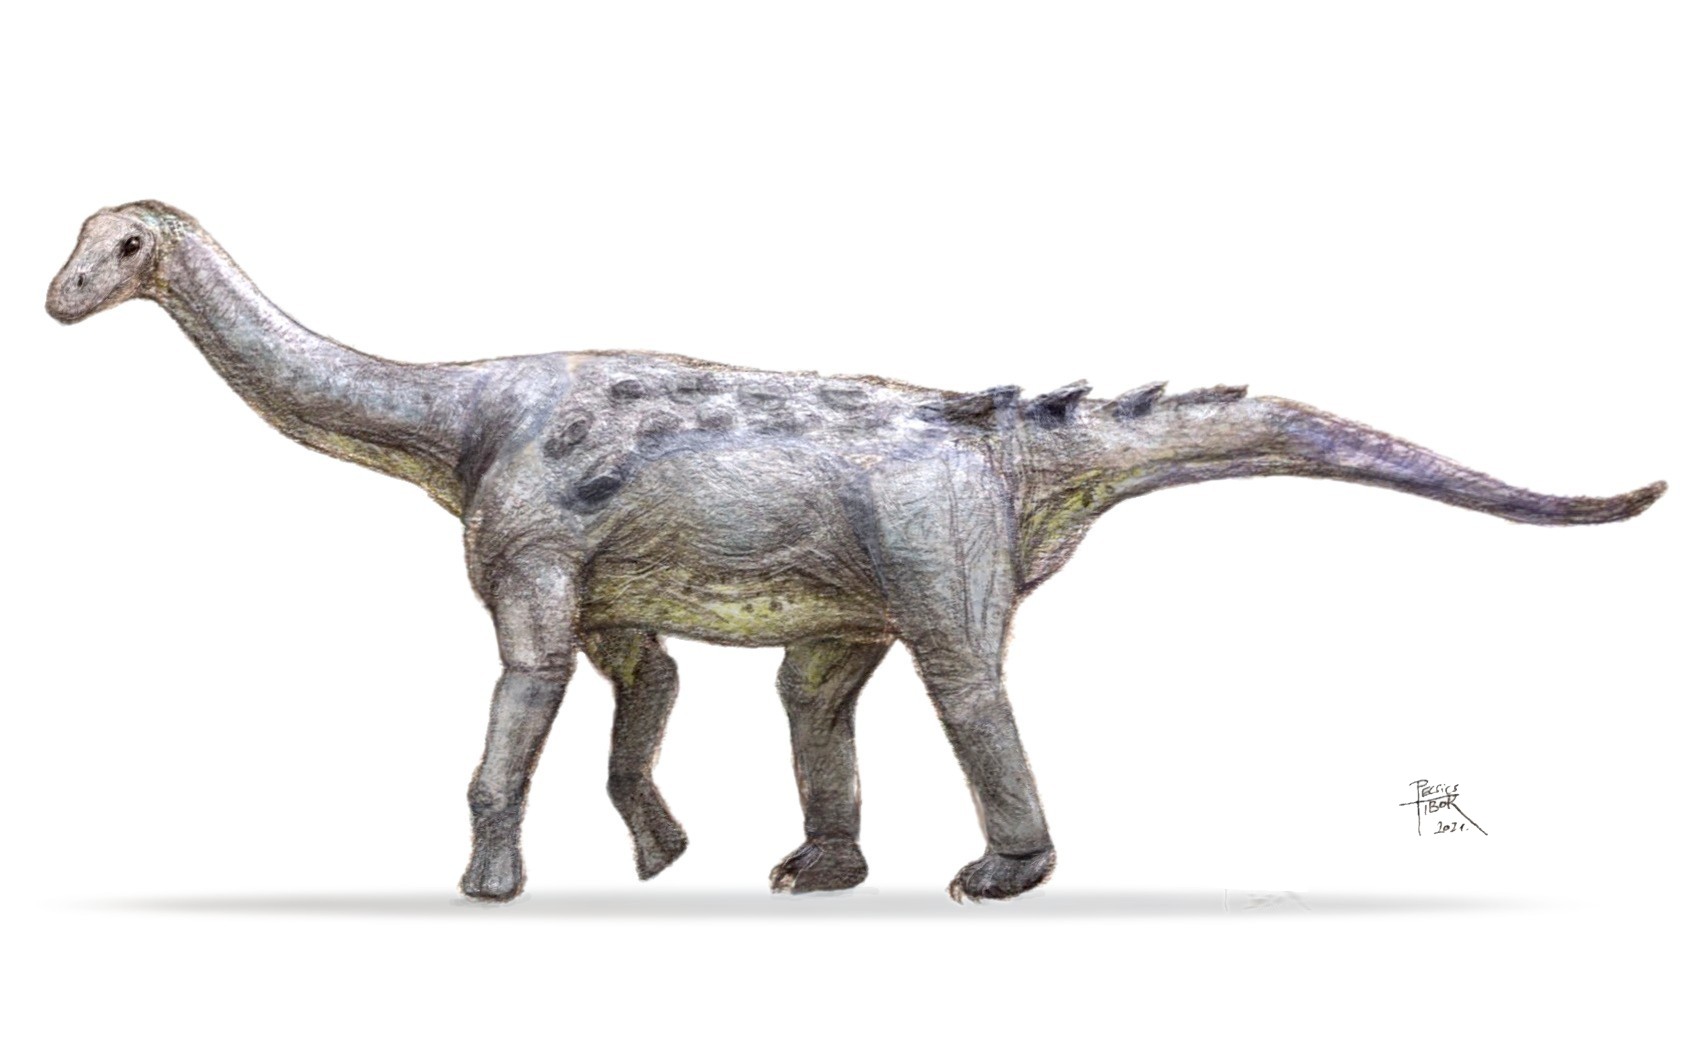 Megtalálták a helyet, ahol megtalálták a Magyarosaurust